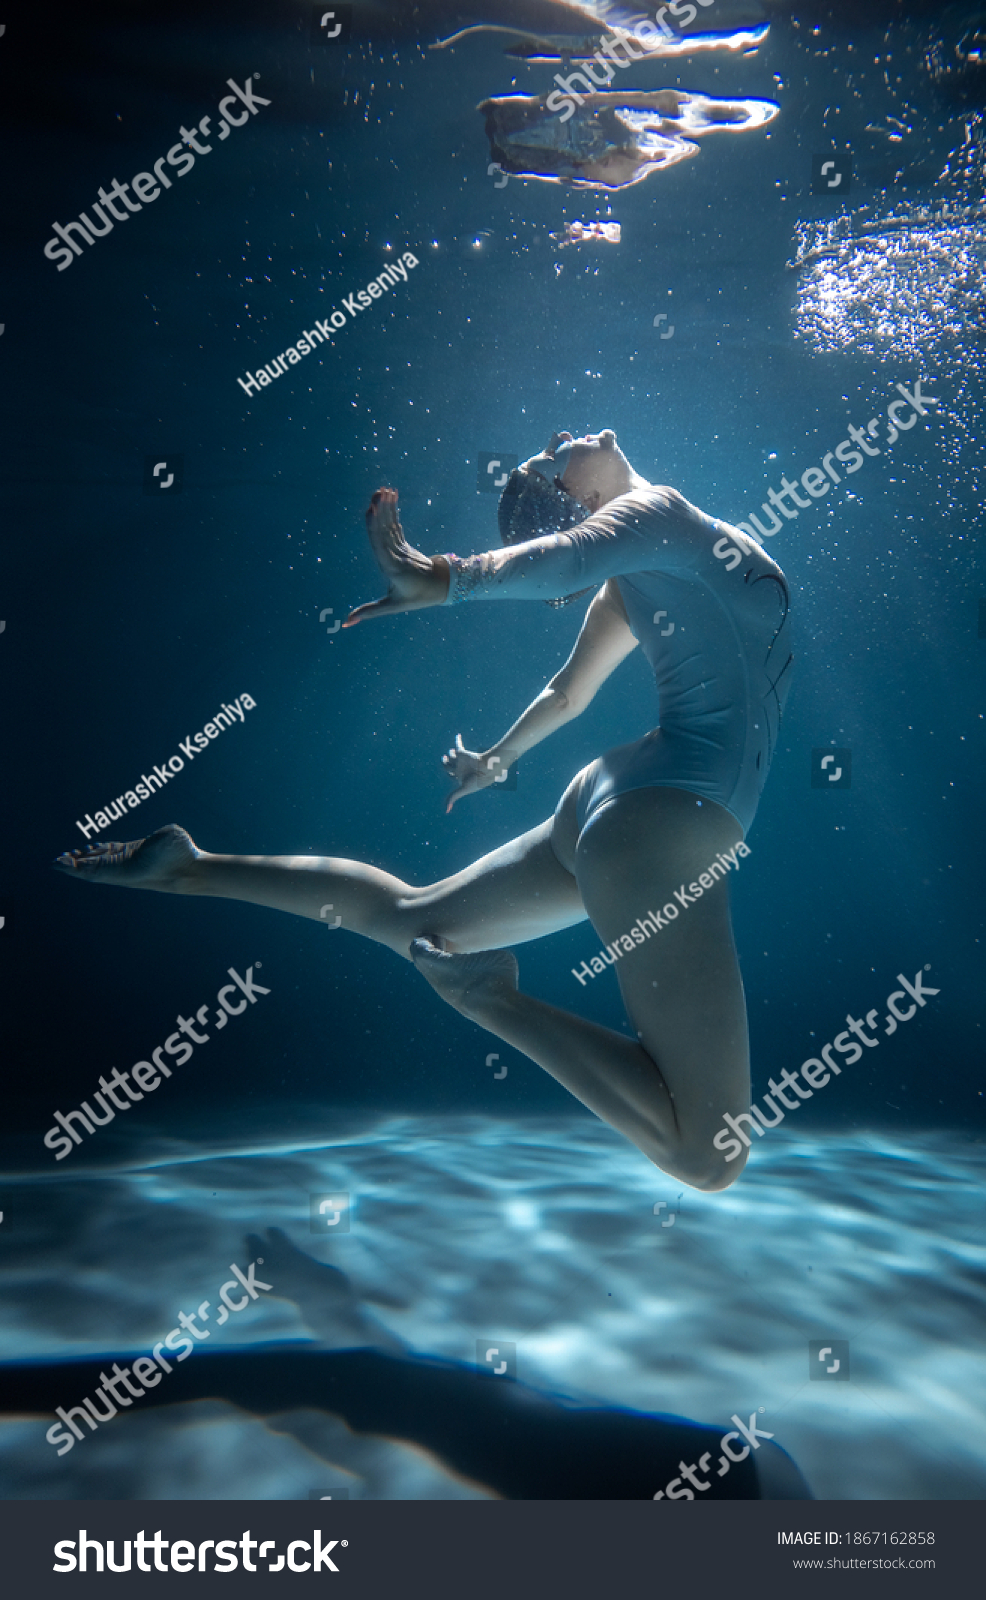 david cavitt add photo girl swimming under water